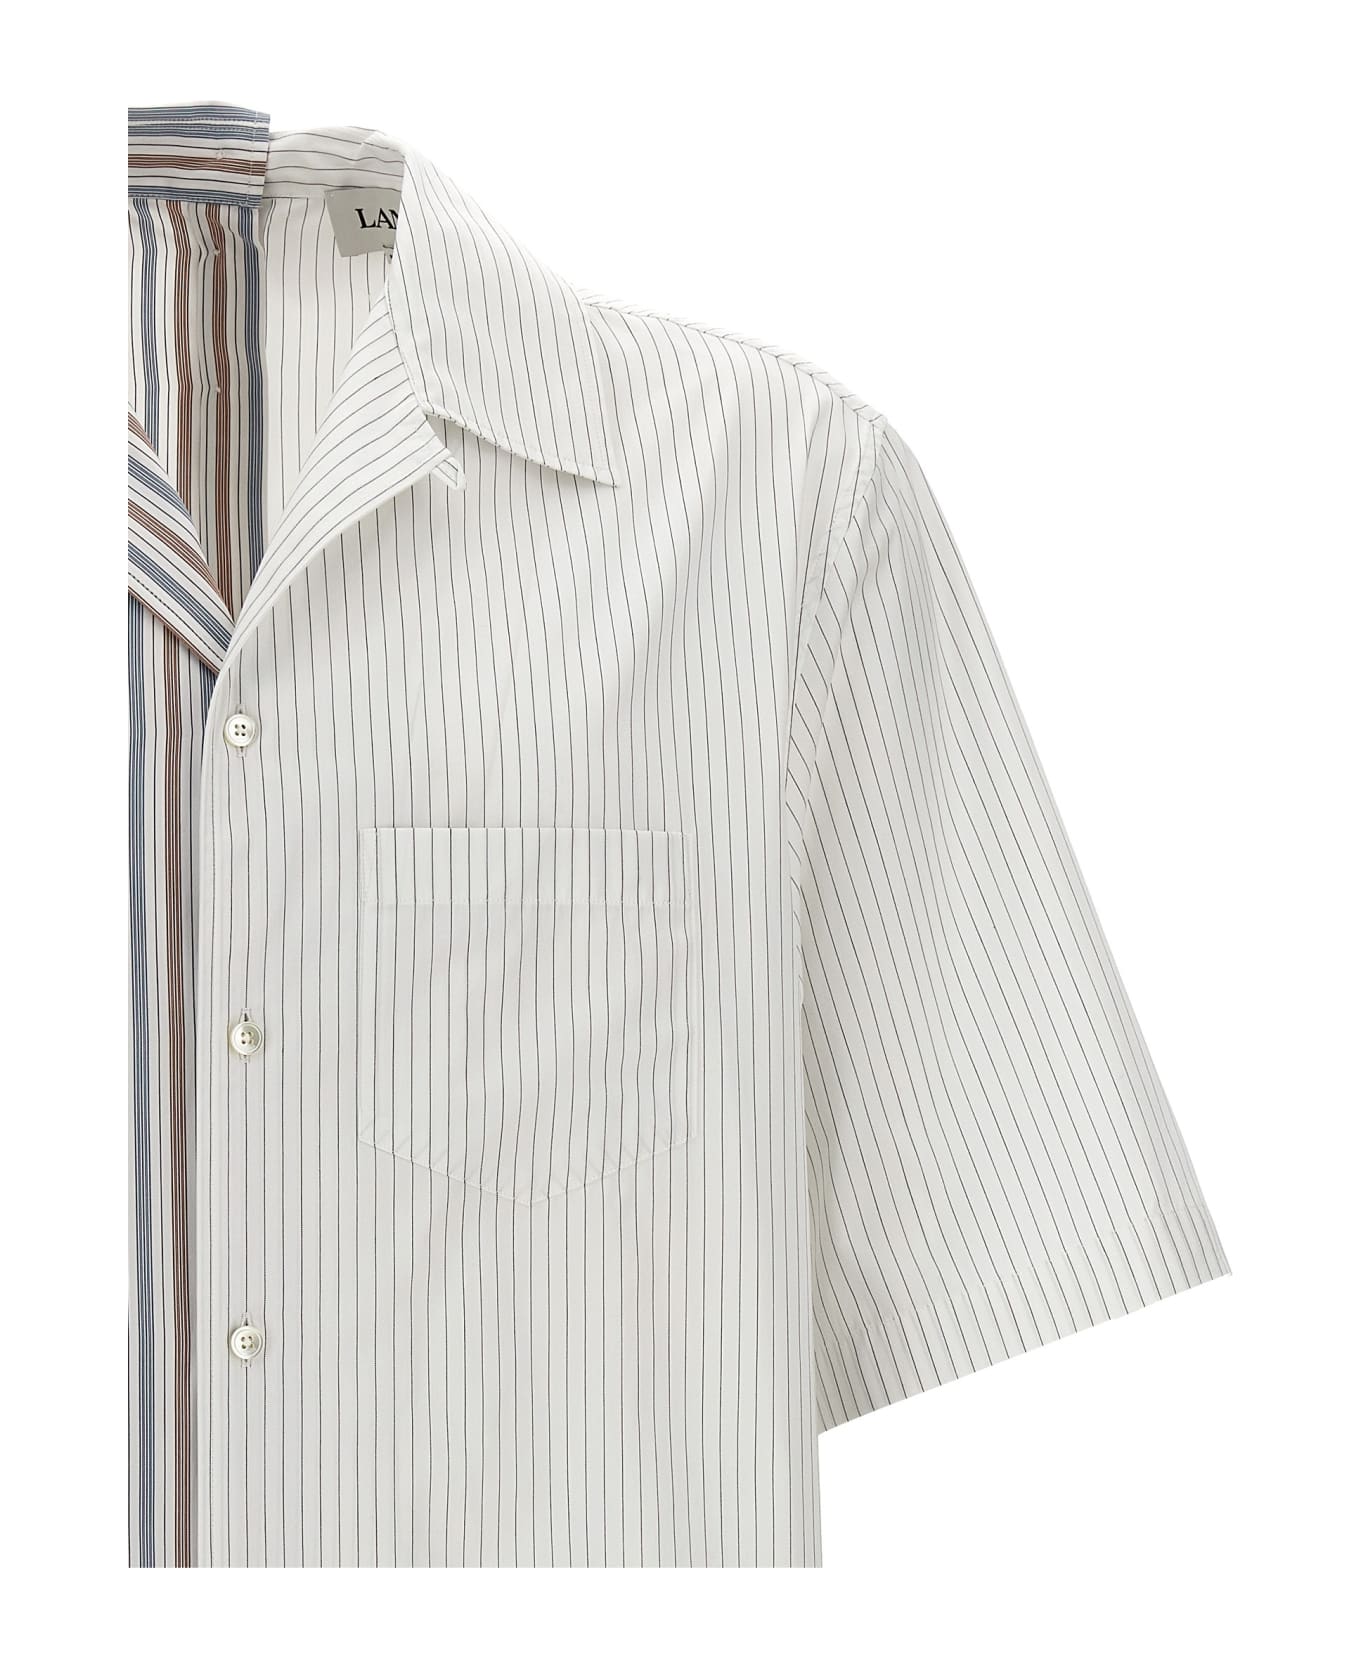 Lanvin Asymmetric Striped Shirt - Bianco